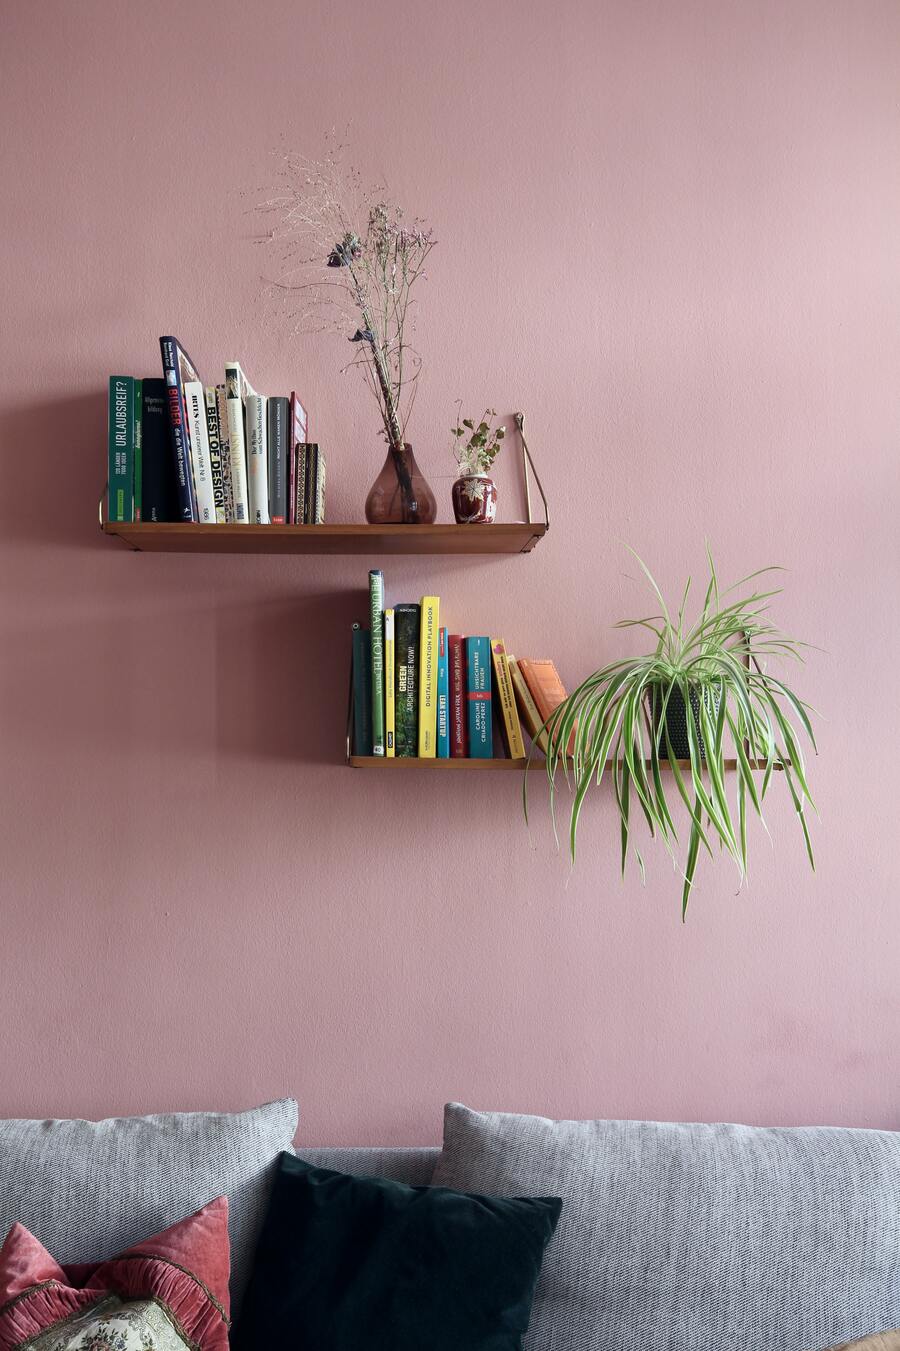 Grünlilie neben Büchern auf einem schlichten, hölzernen Wandregal an einer rosa Wand, davor ein Sofa mit kuscheligen Kissen